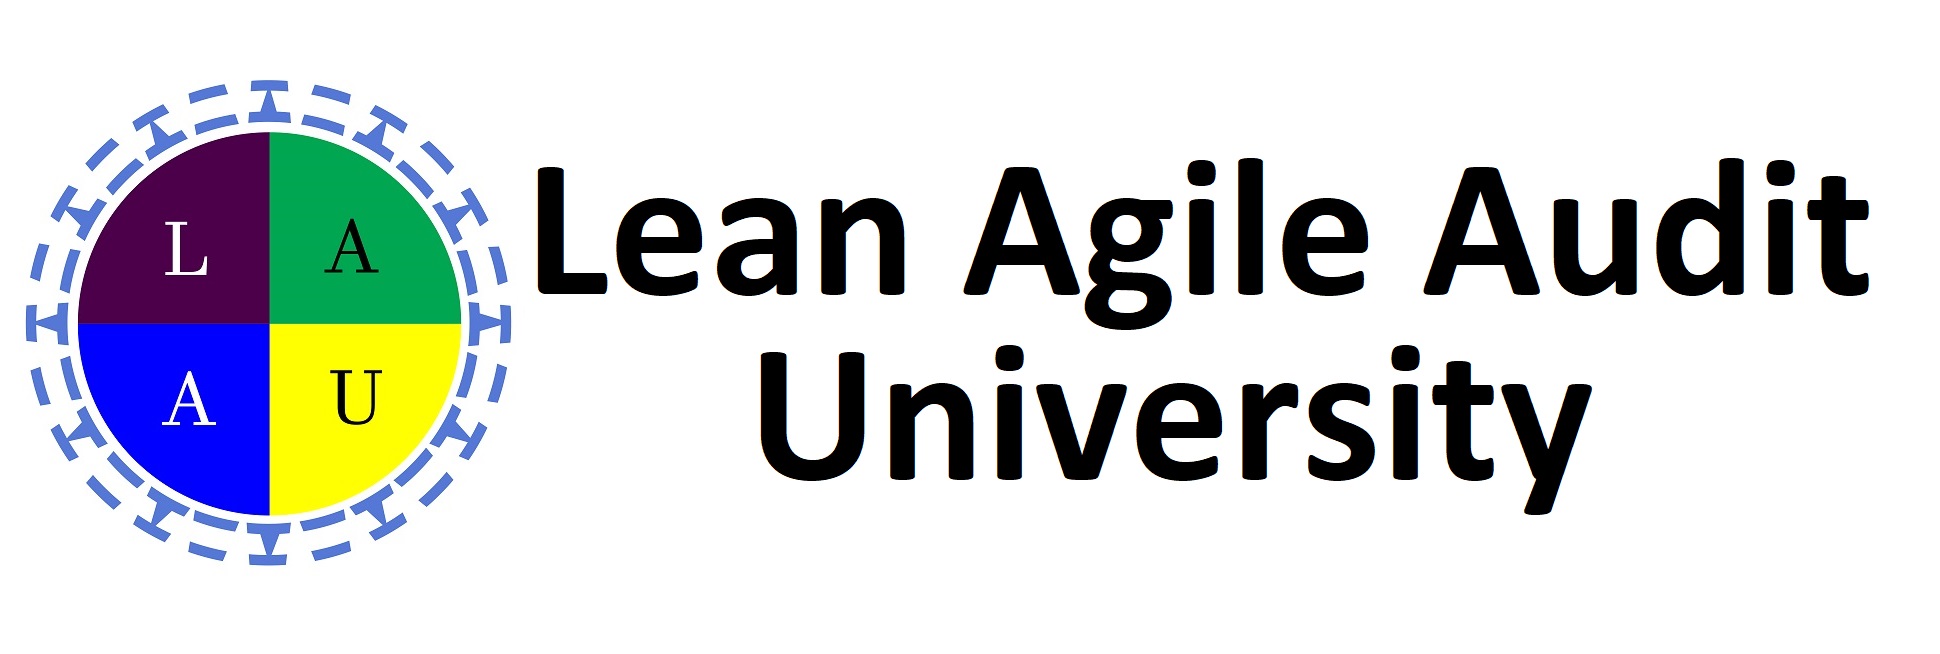 Lean Agile Audit University (LAAU)